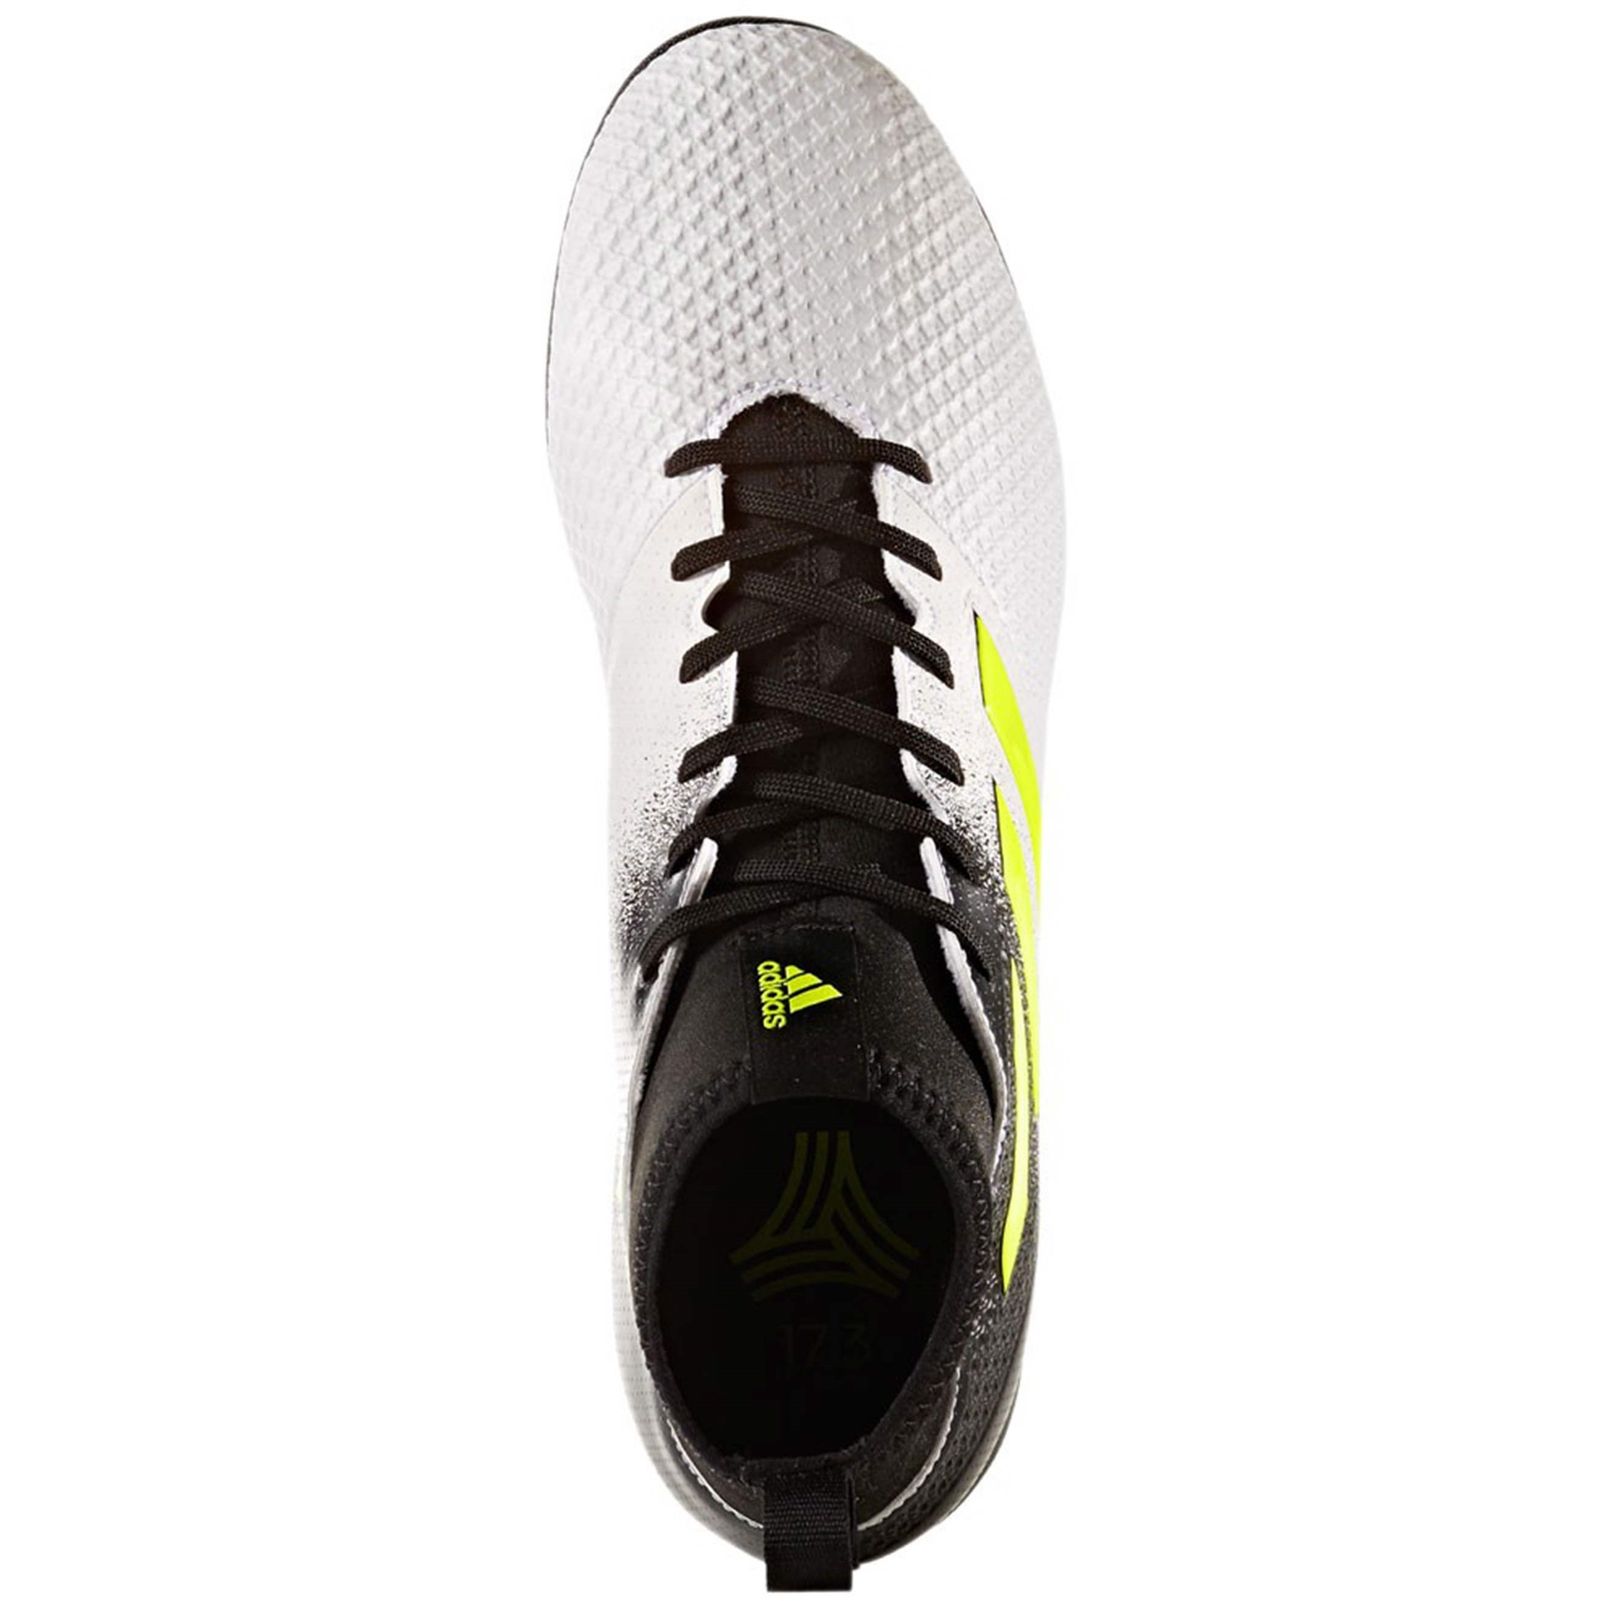 کفش مخصوص فوتبال مردانه آدیداس مدل ACE Tango 17-3 TF